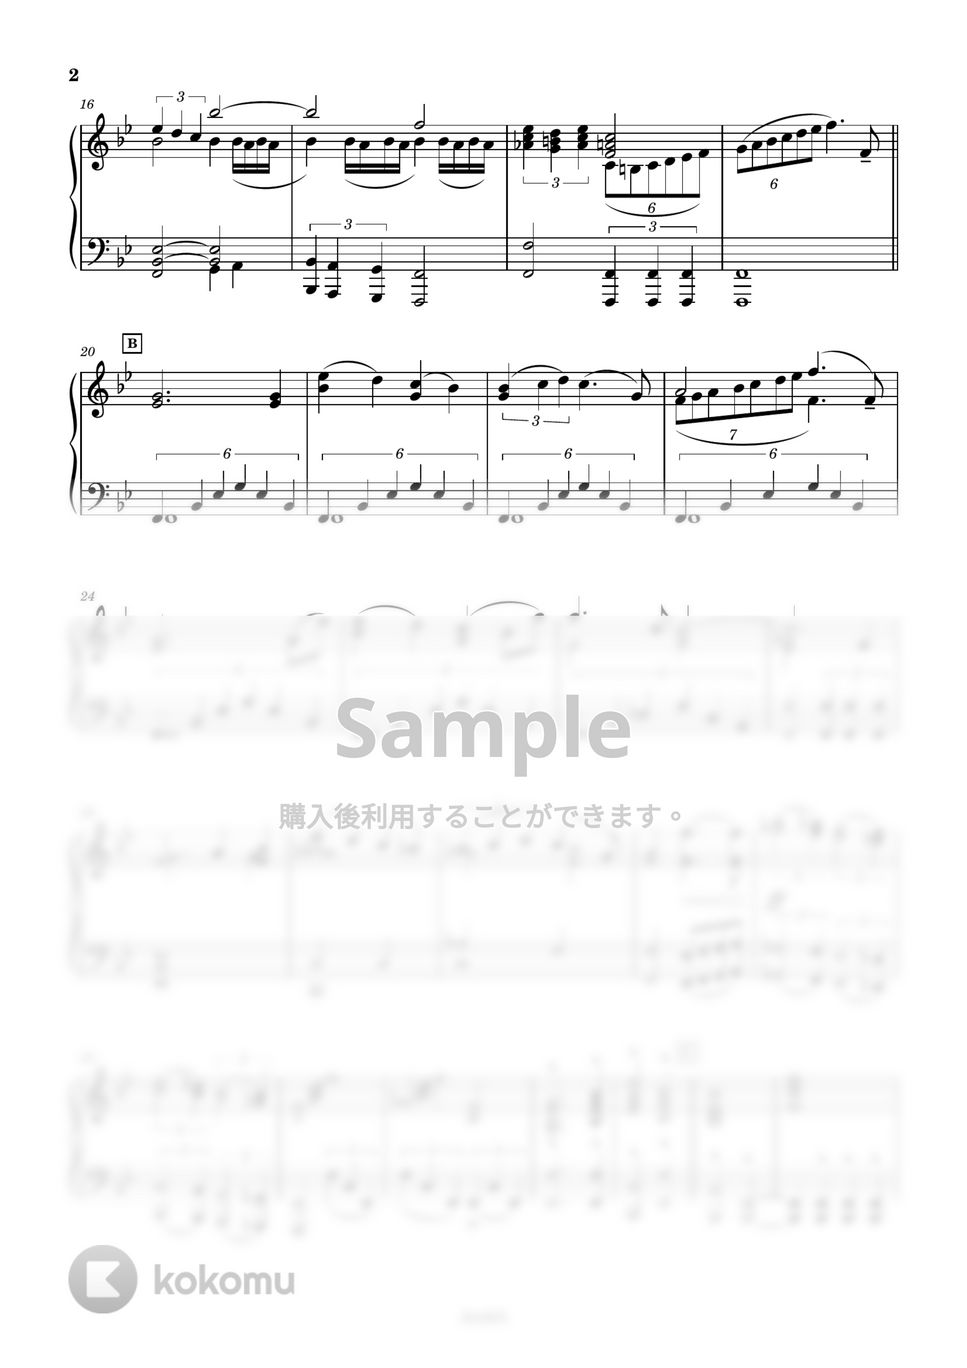 スターウォーズ - スターウォーズメインテーマピアノソロ (スターウォーズピアノソロ/スターウォーズピアノ) by AsukA818